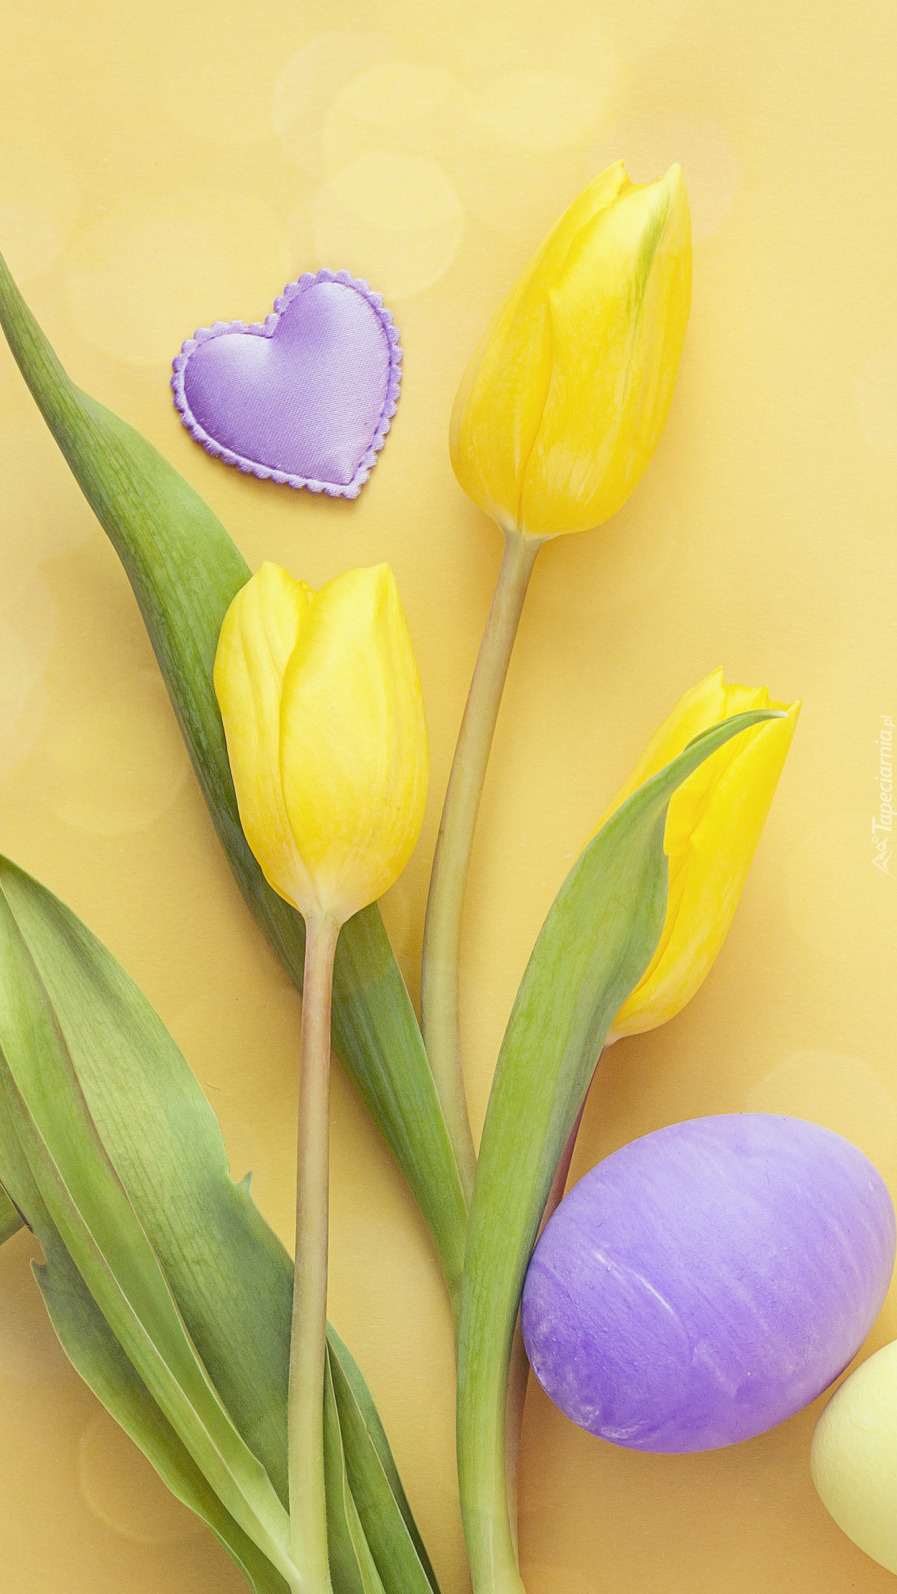 Pisanki i serduszko obok żółtych tulipanów